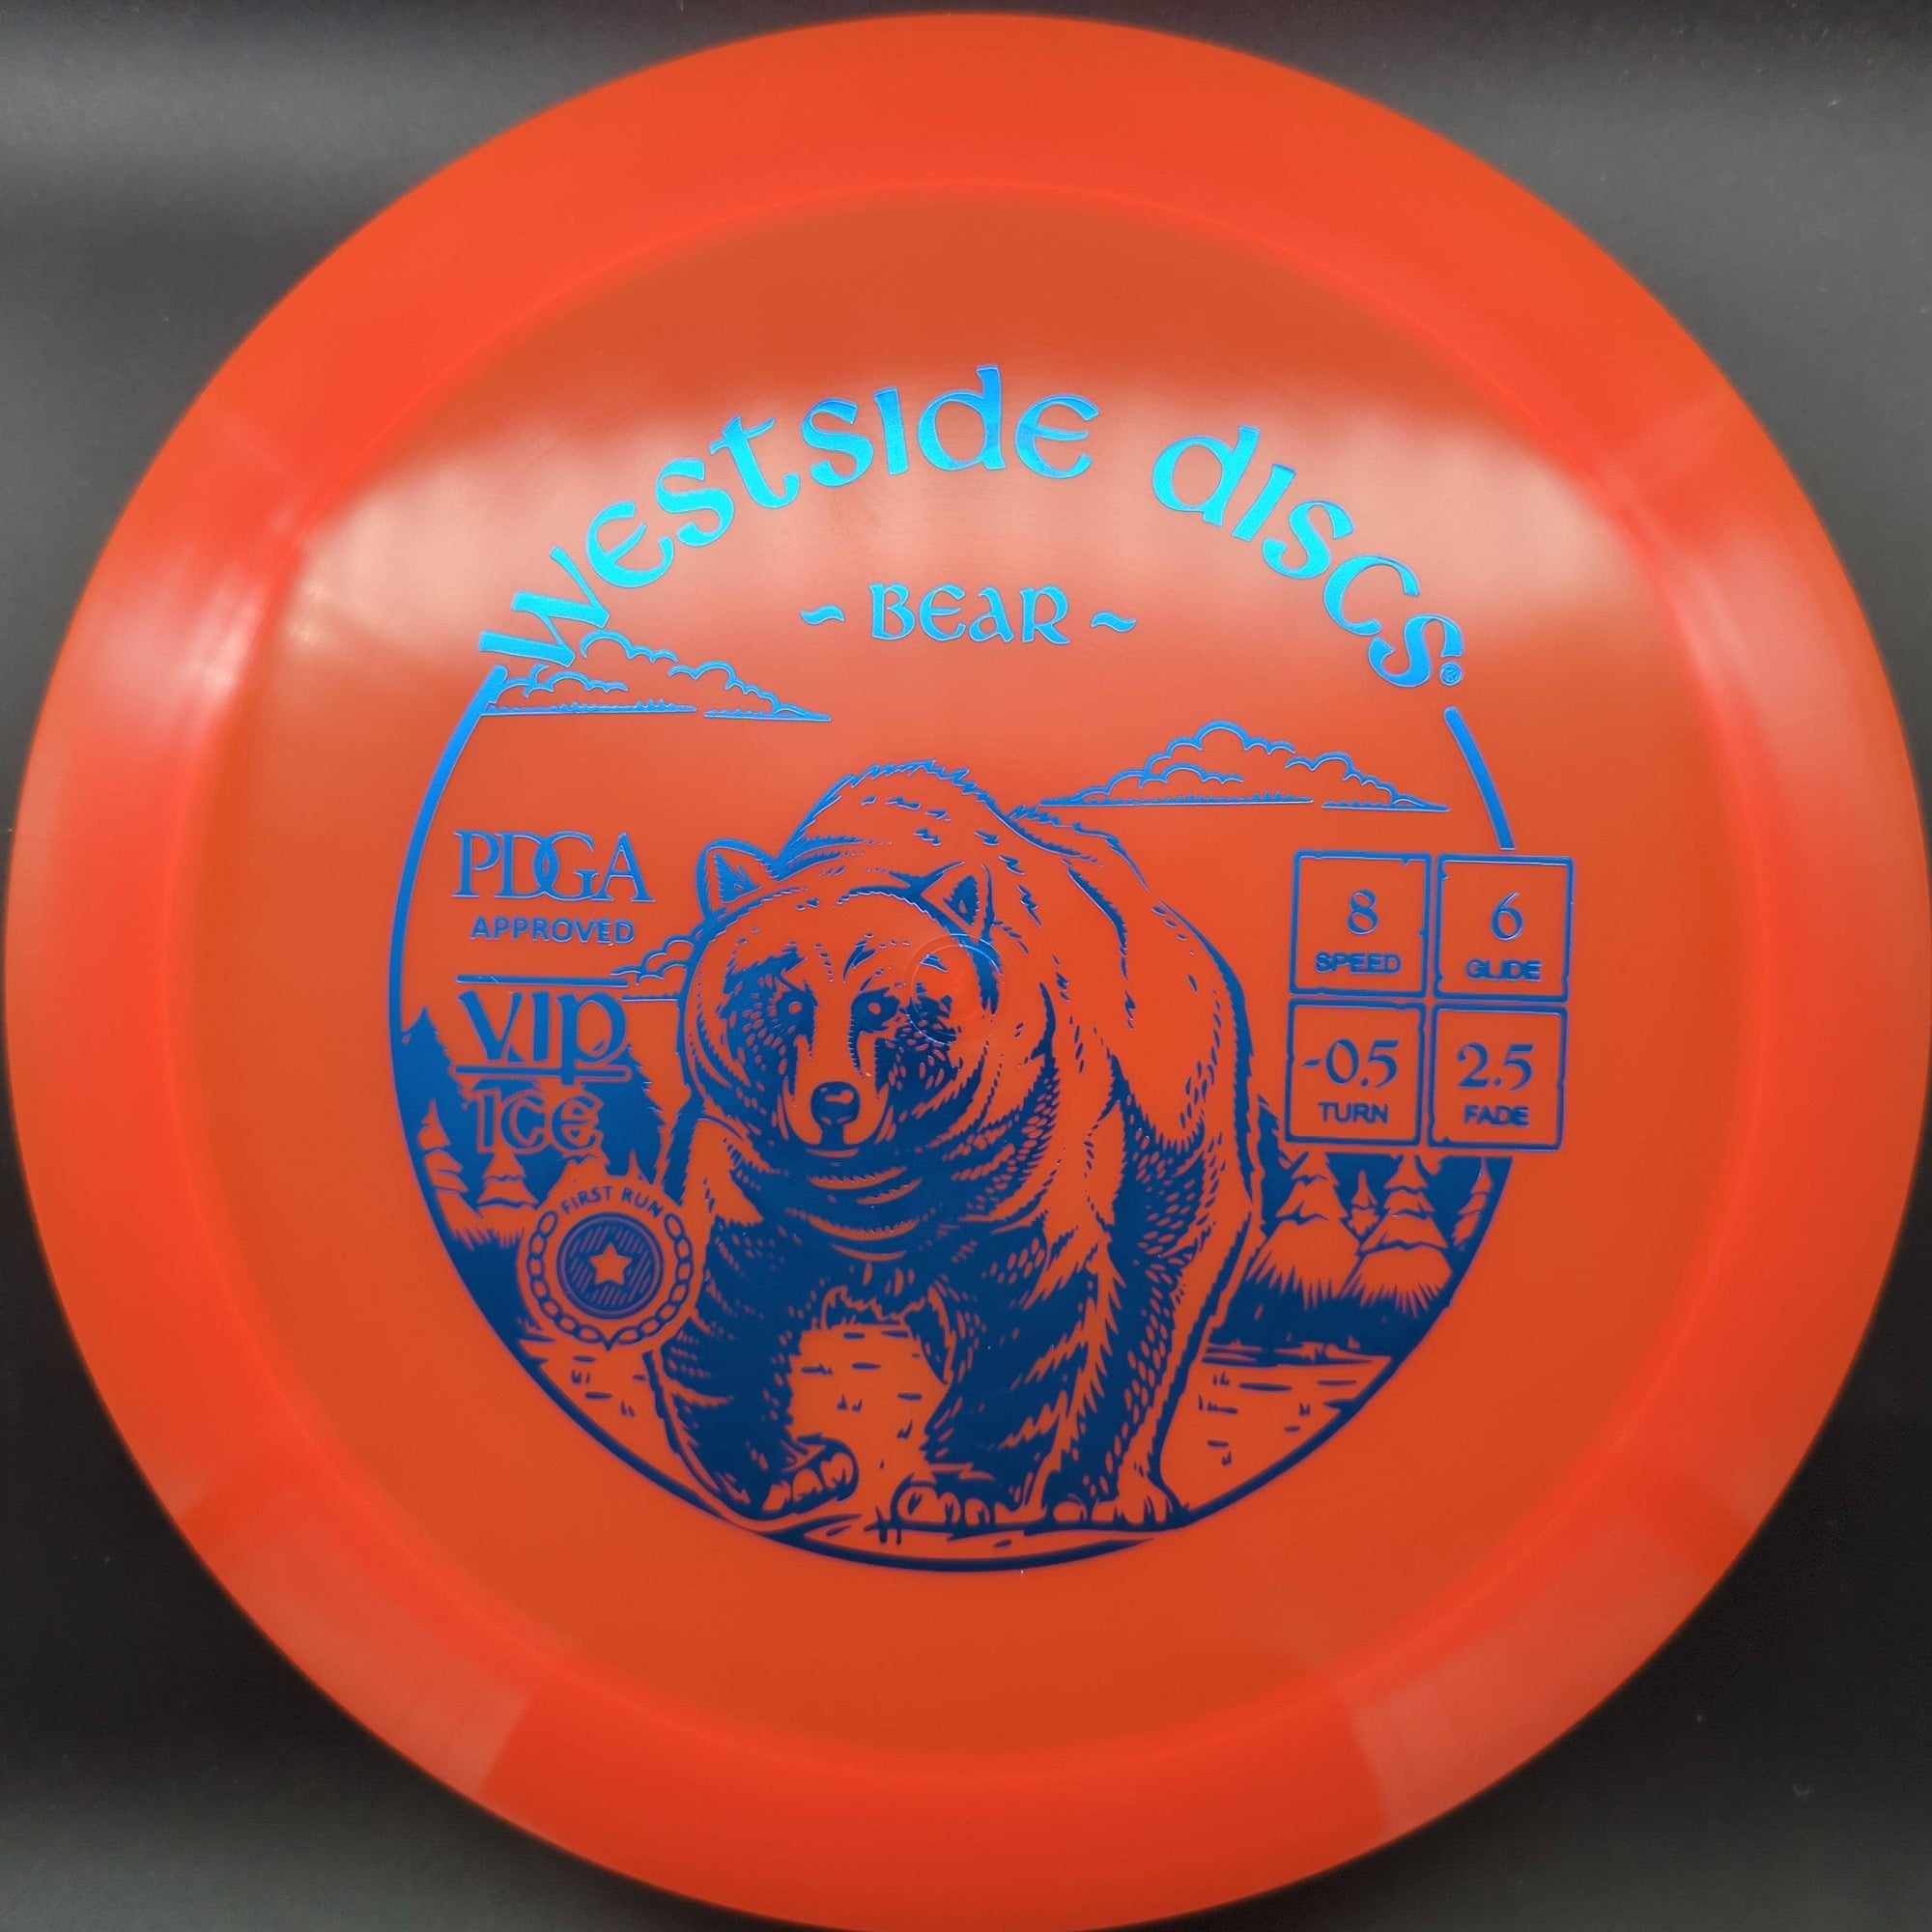 Westside Discs Fairway Driver Orange Blue Stamp 167g Bear, VIP-Ice,  First Run